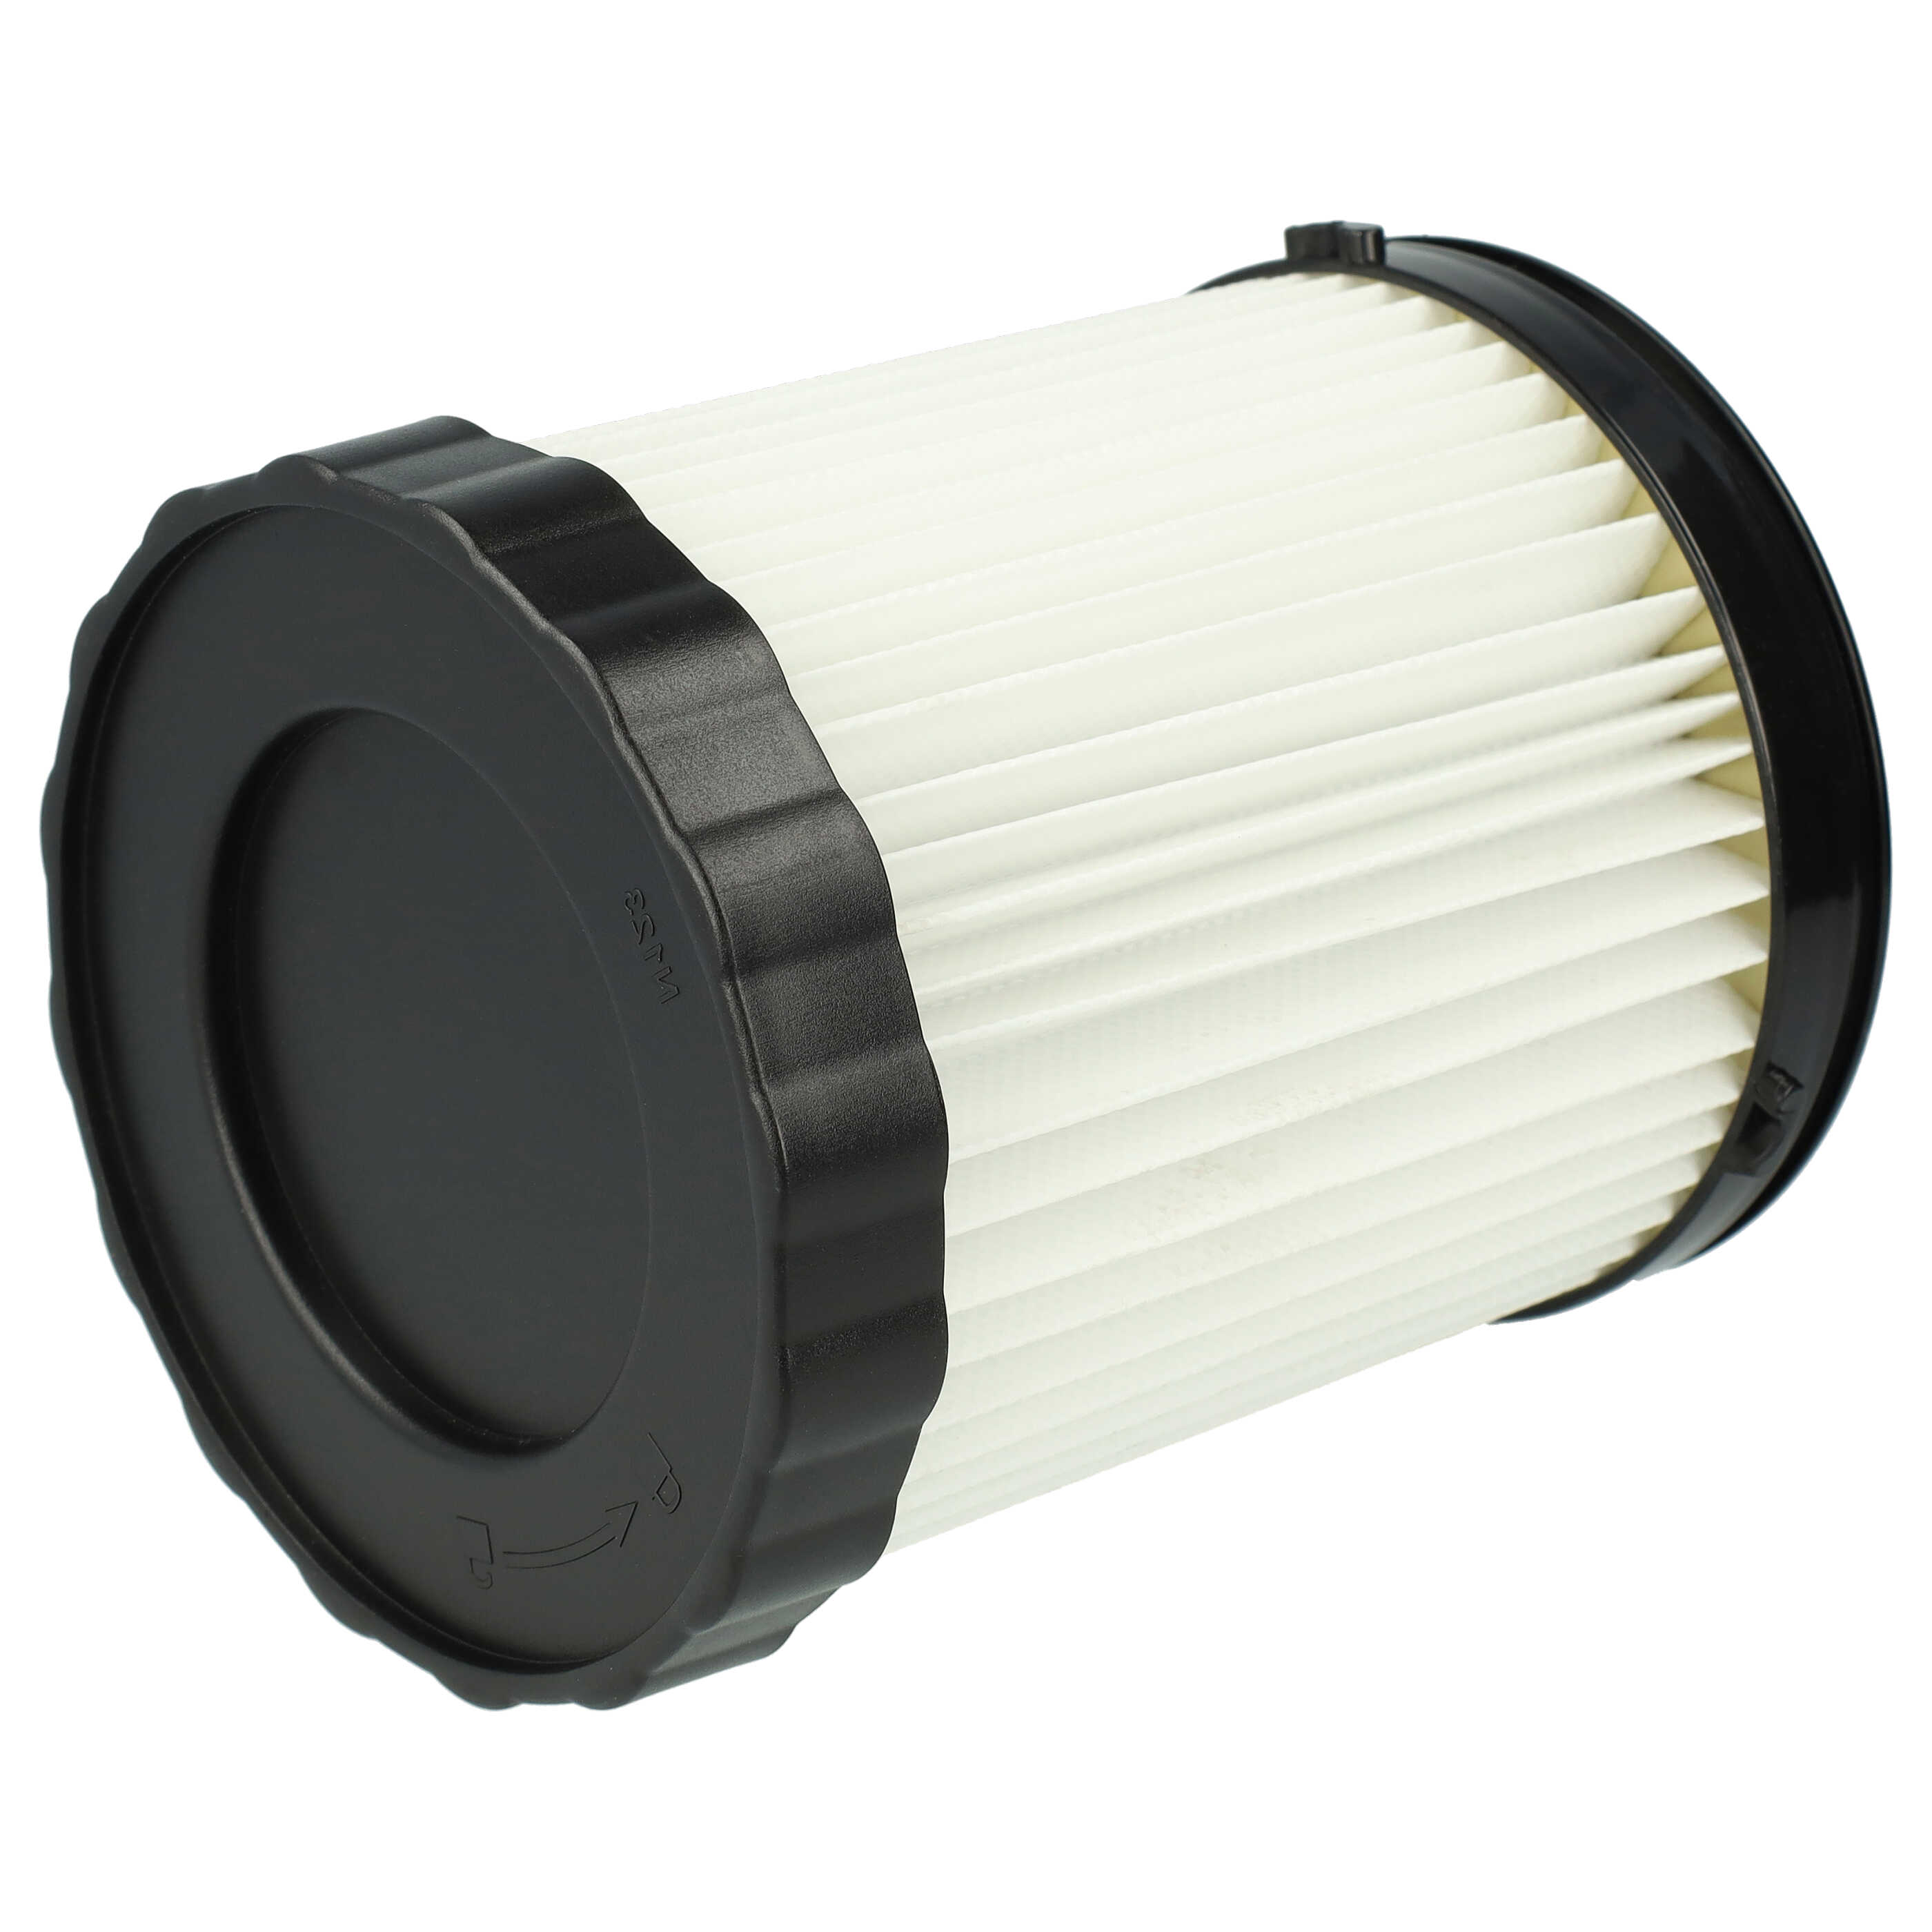 2x Filtro reemplaza Bosch 1 600 A01 1RT, 3165140917940, 2 608 000 663 para aspiradora - filtro plisado, blanco